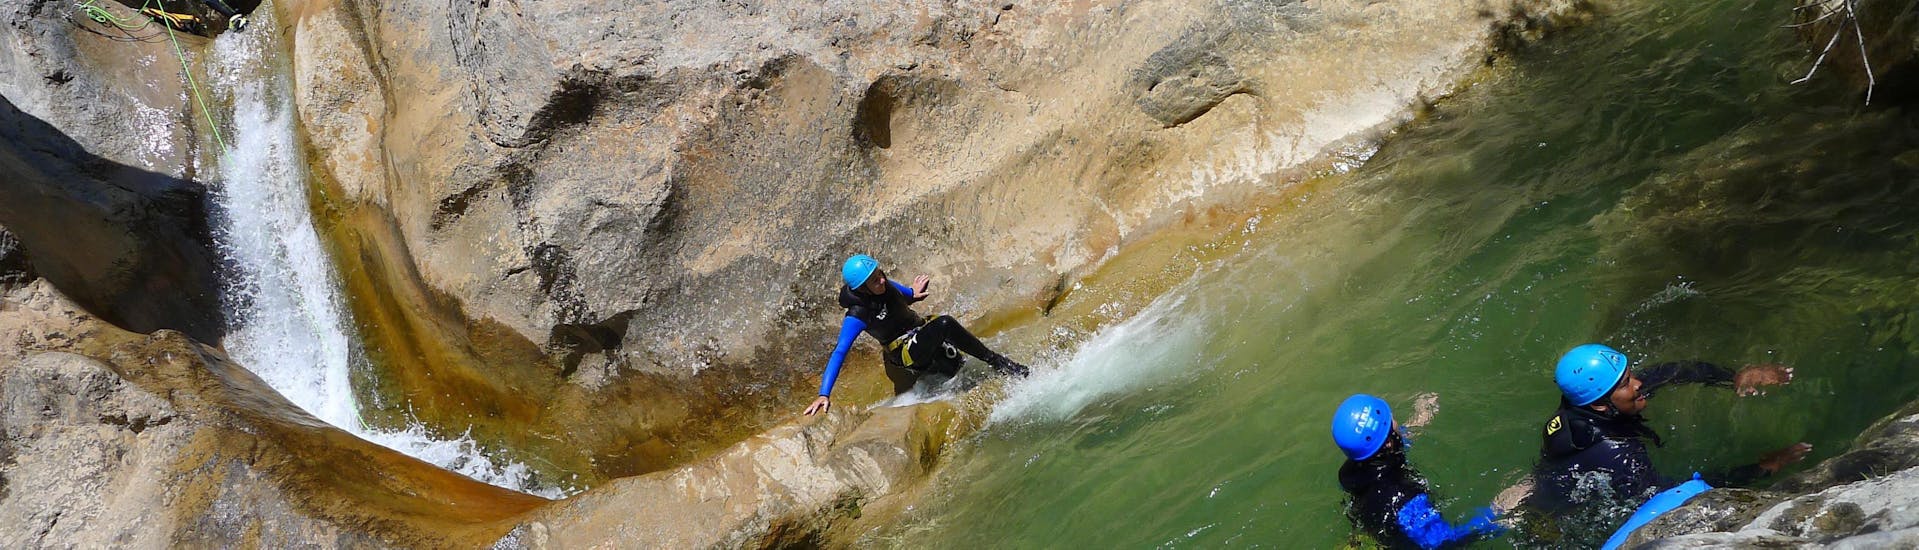 Un touriste fait de la descente en rappel dans le Canyon de Miraval en Espagne pendant l'activité aquatique Canyoning avec H2O vives.